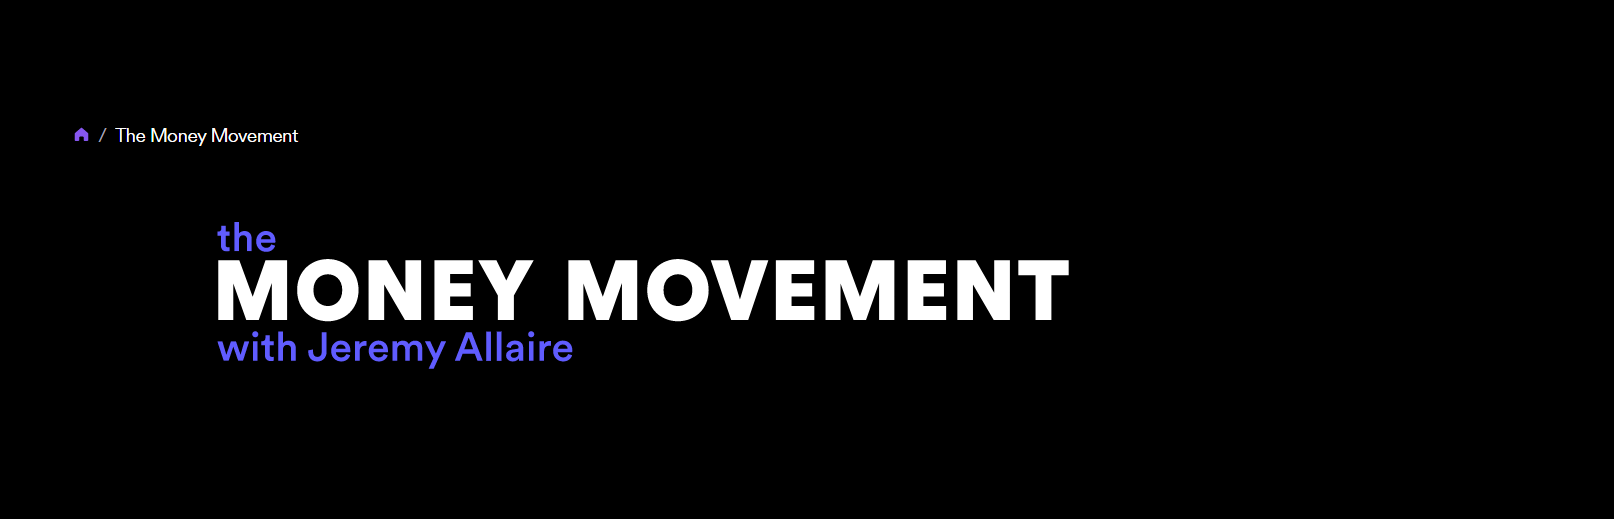 The Money Movement